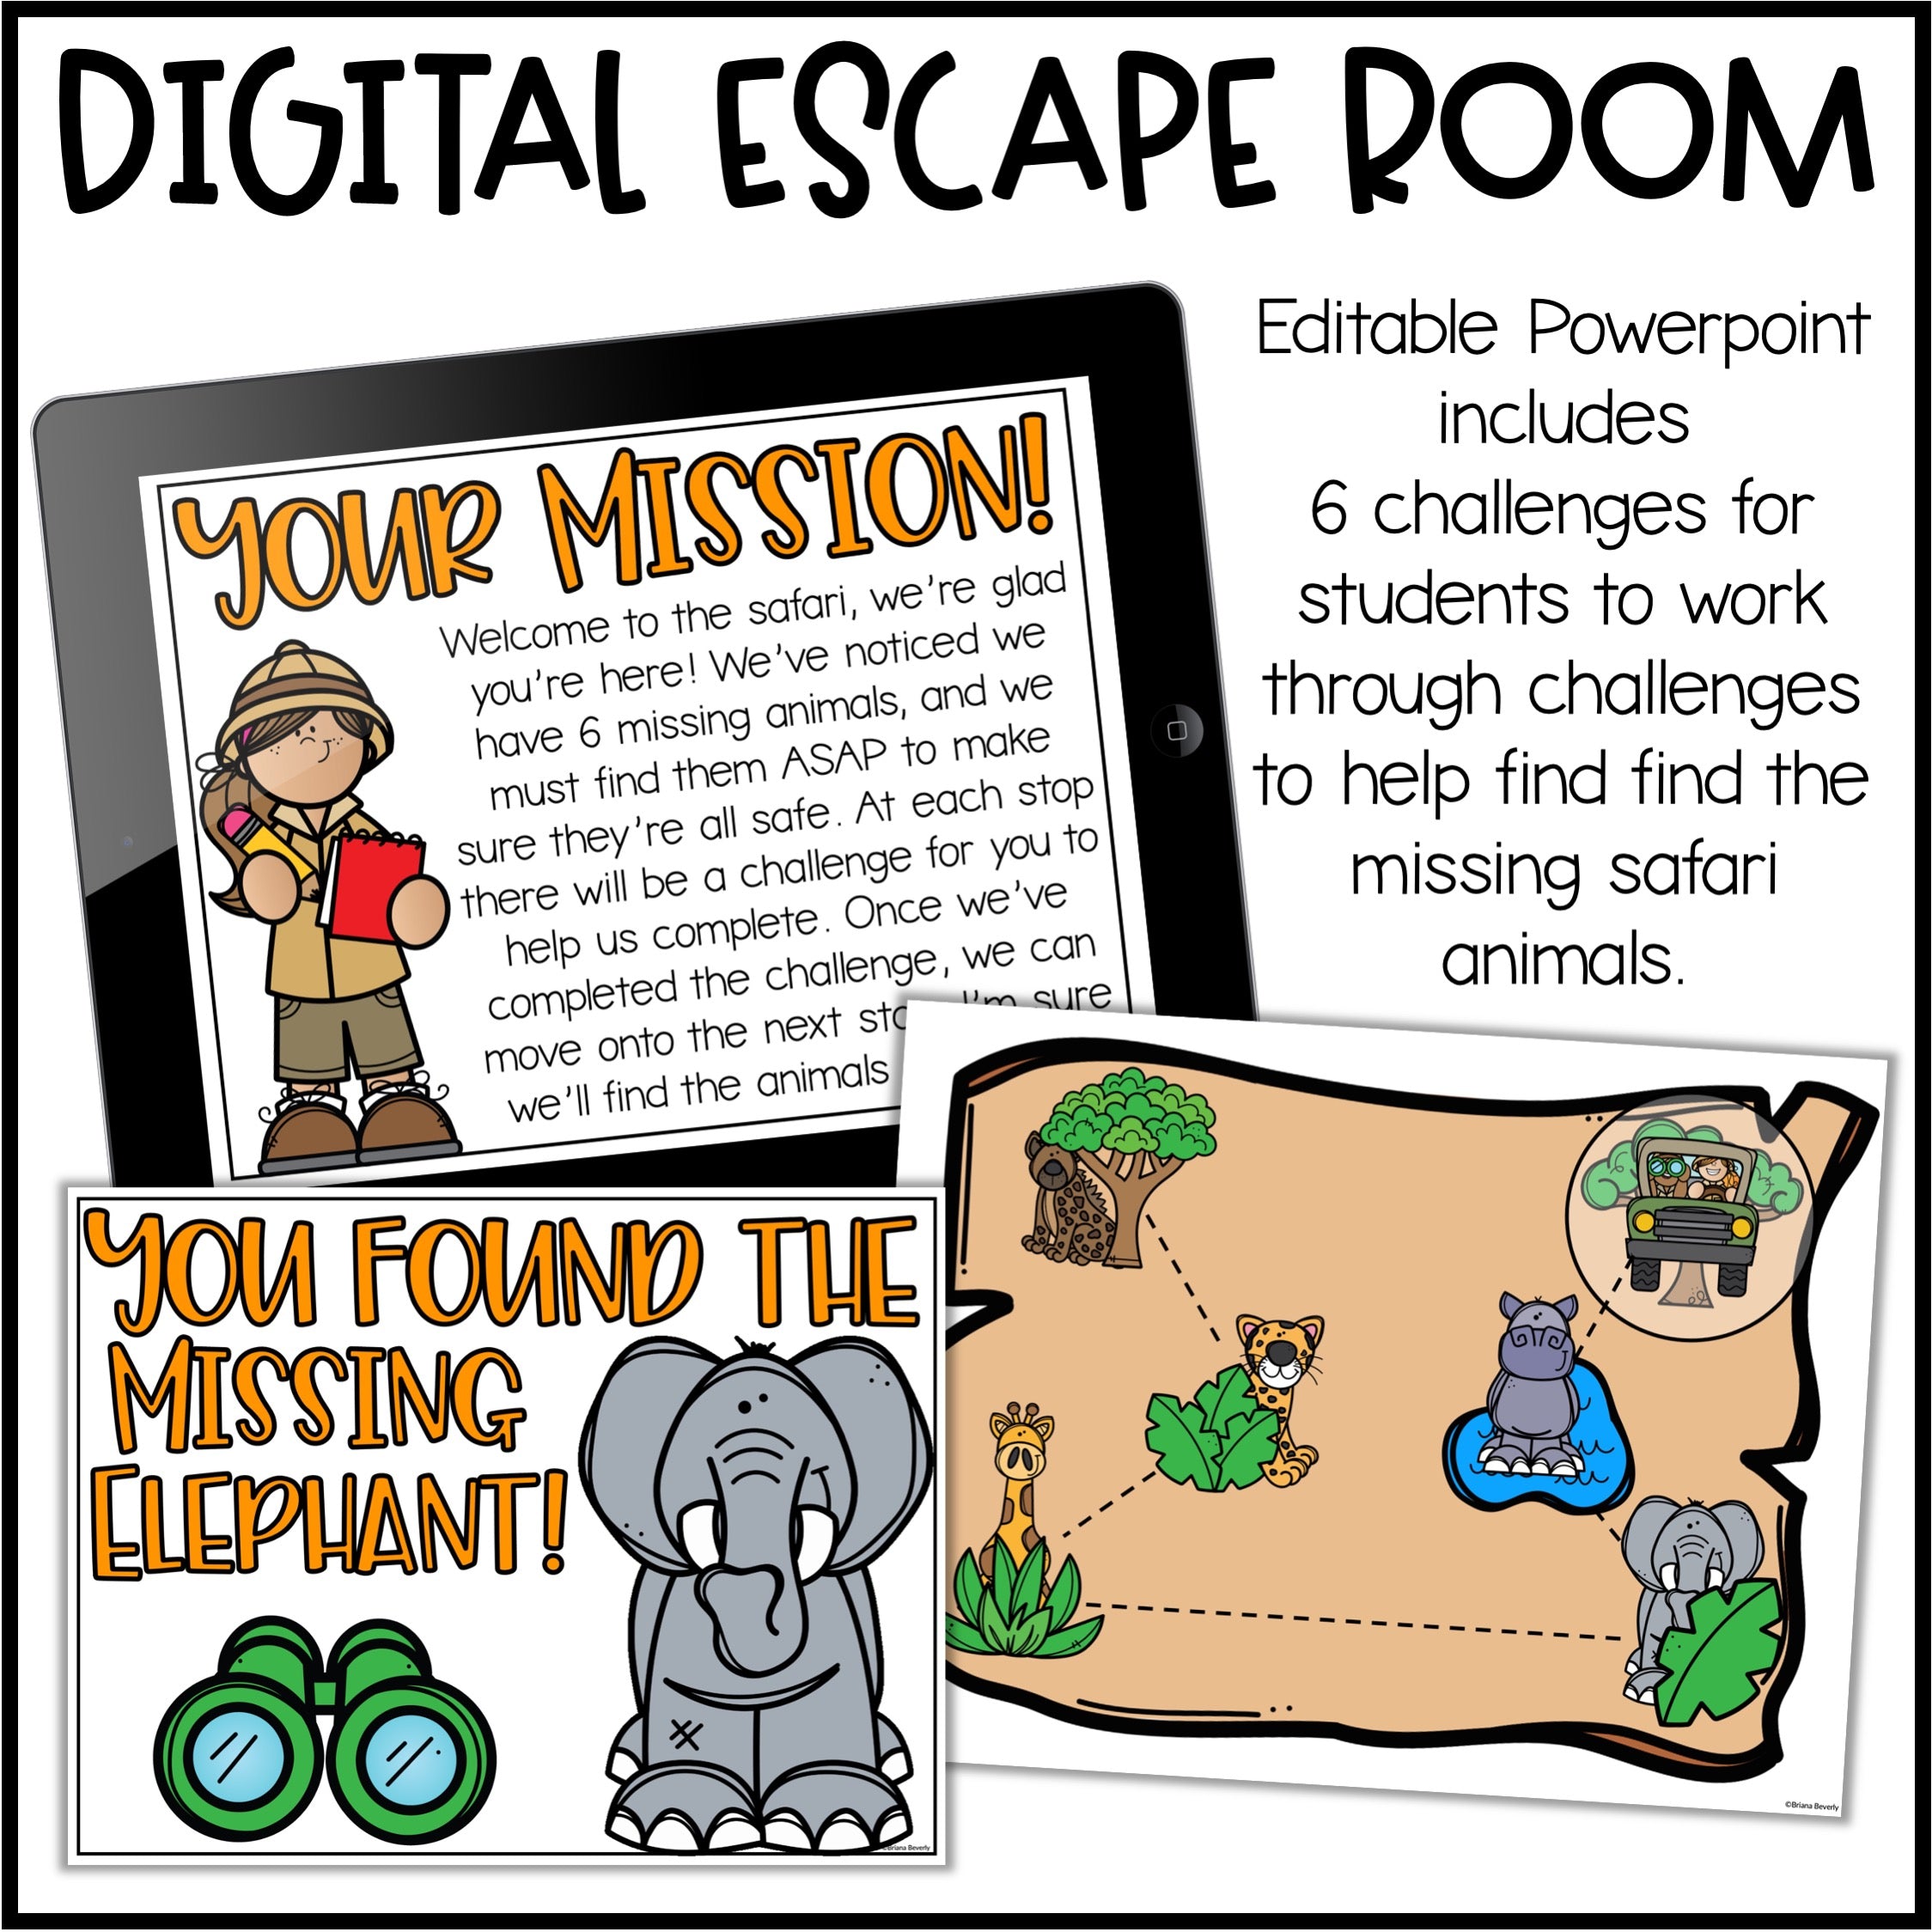 Preparar um 'Escape Room' na escola - FuniBlogs - FUNIBER